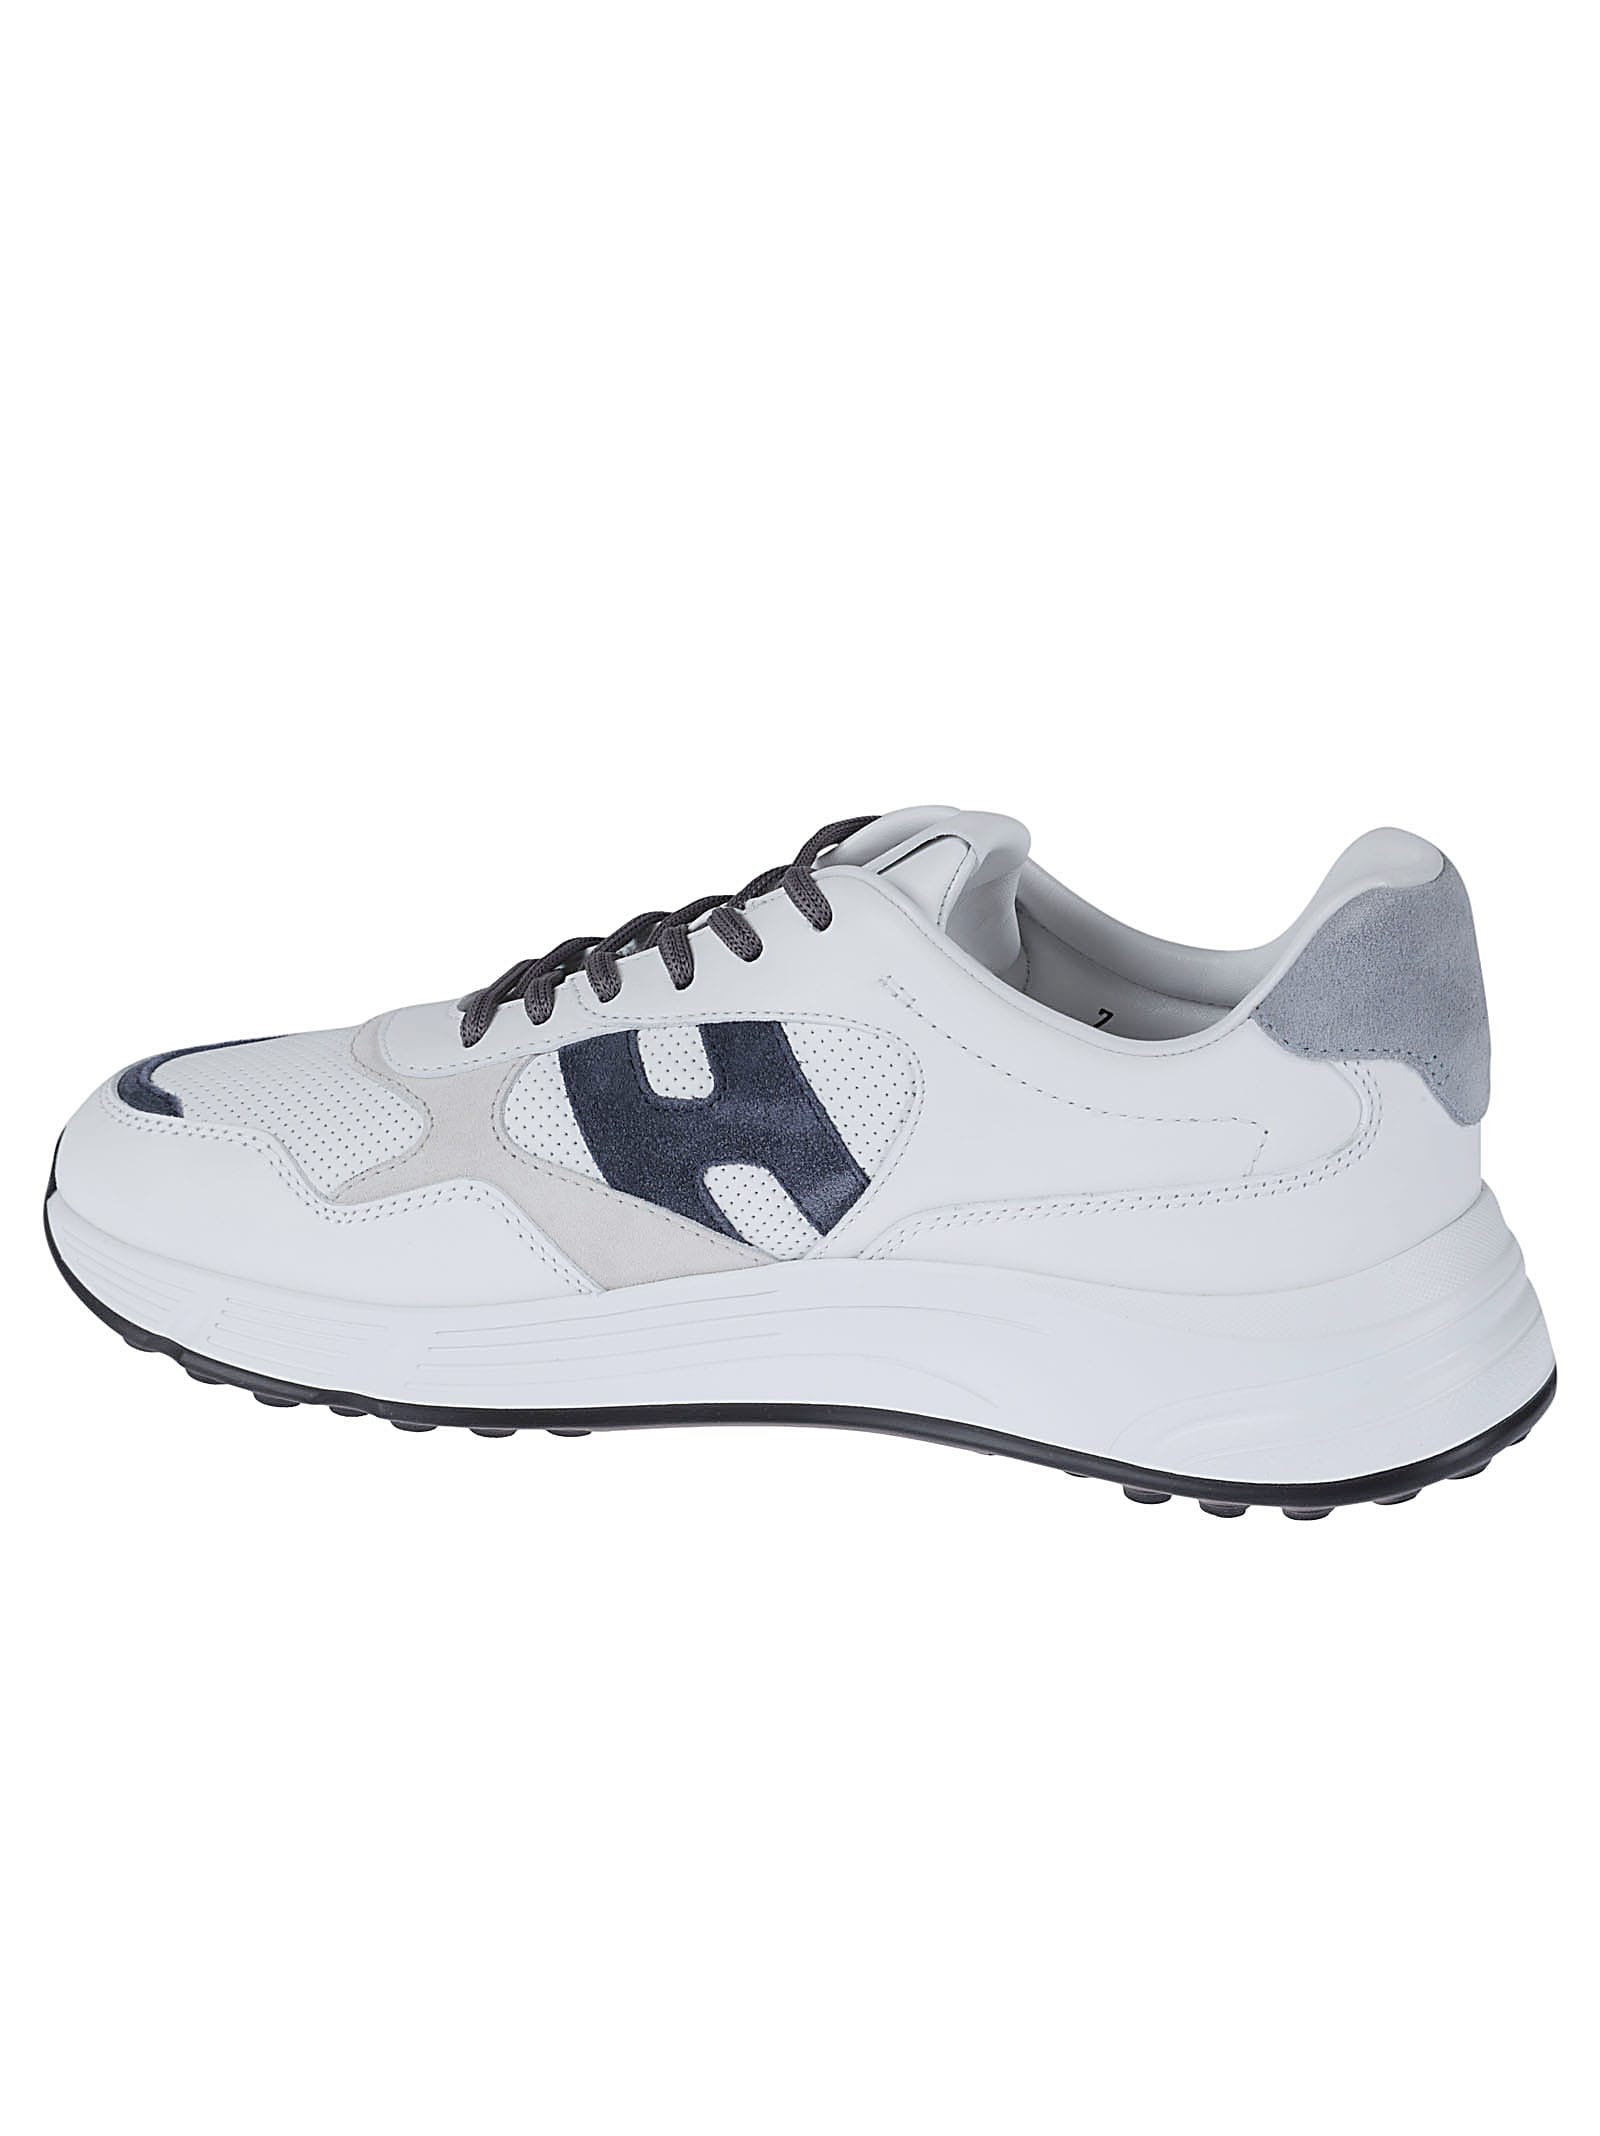 Shop Hogan Hyperlight Sneakers In W